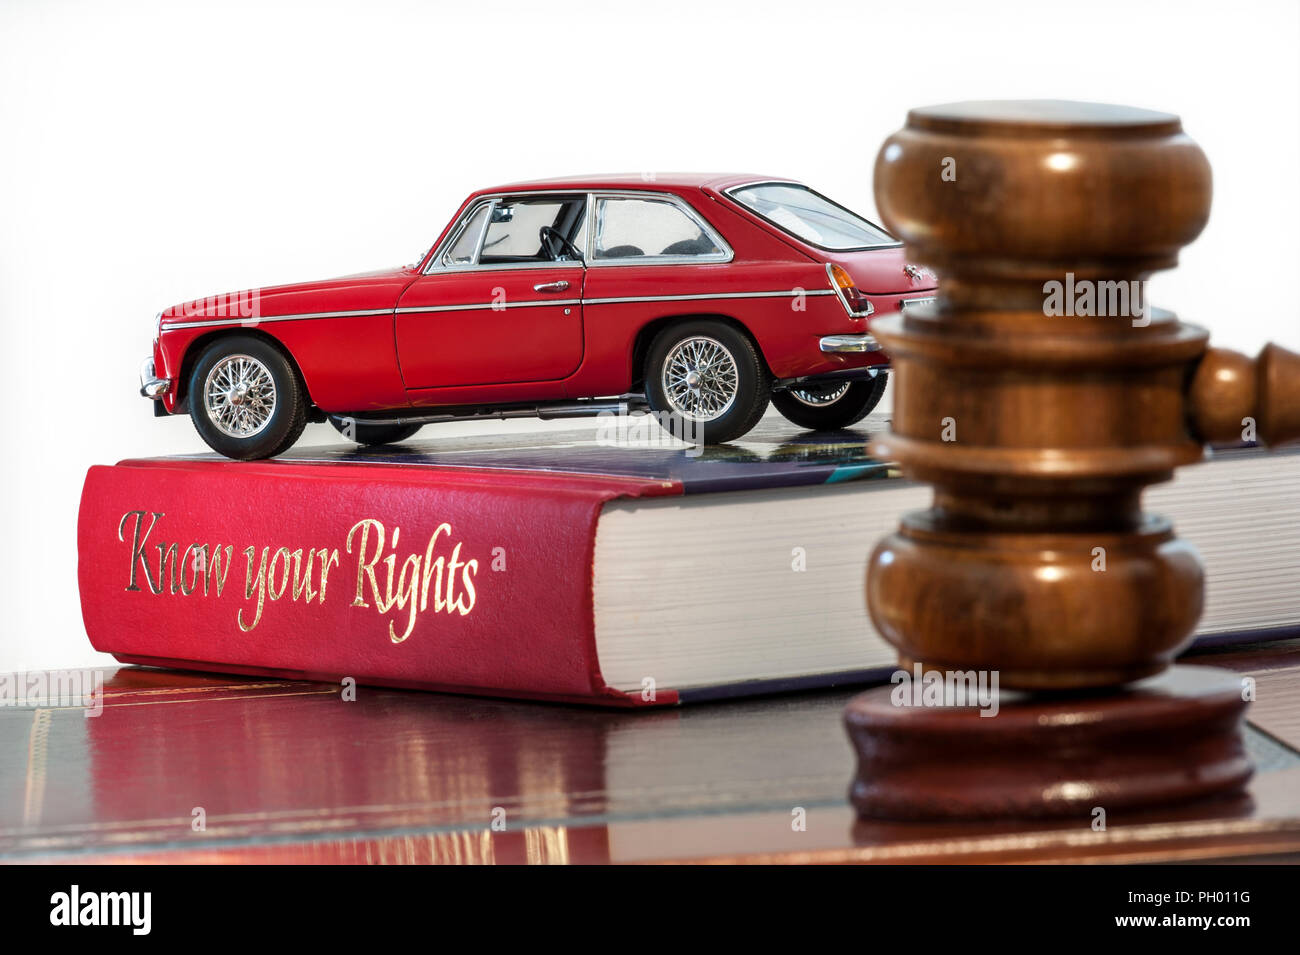 Verkauft Auktionatoren Hammer in saleroom Auktion kaufen verkaufen Situation mit Classic Red MGB GT ruht auf rechtliche Beratung Referenz Buch "Kennen sie ihre Rechte" Stockfoto